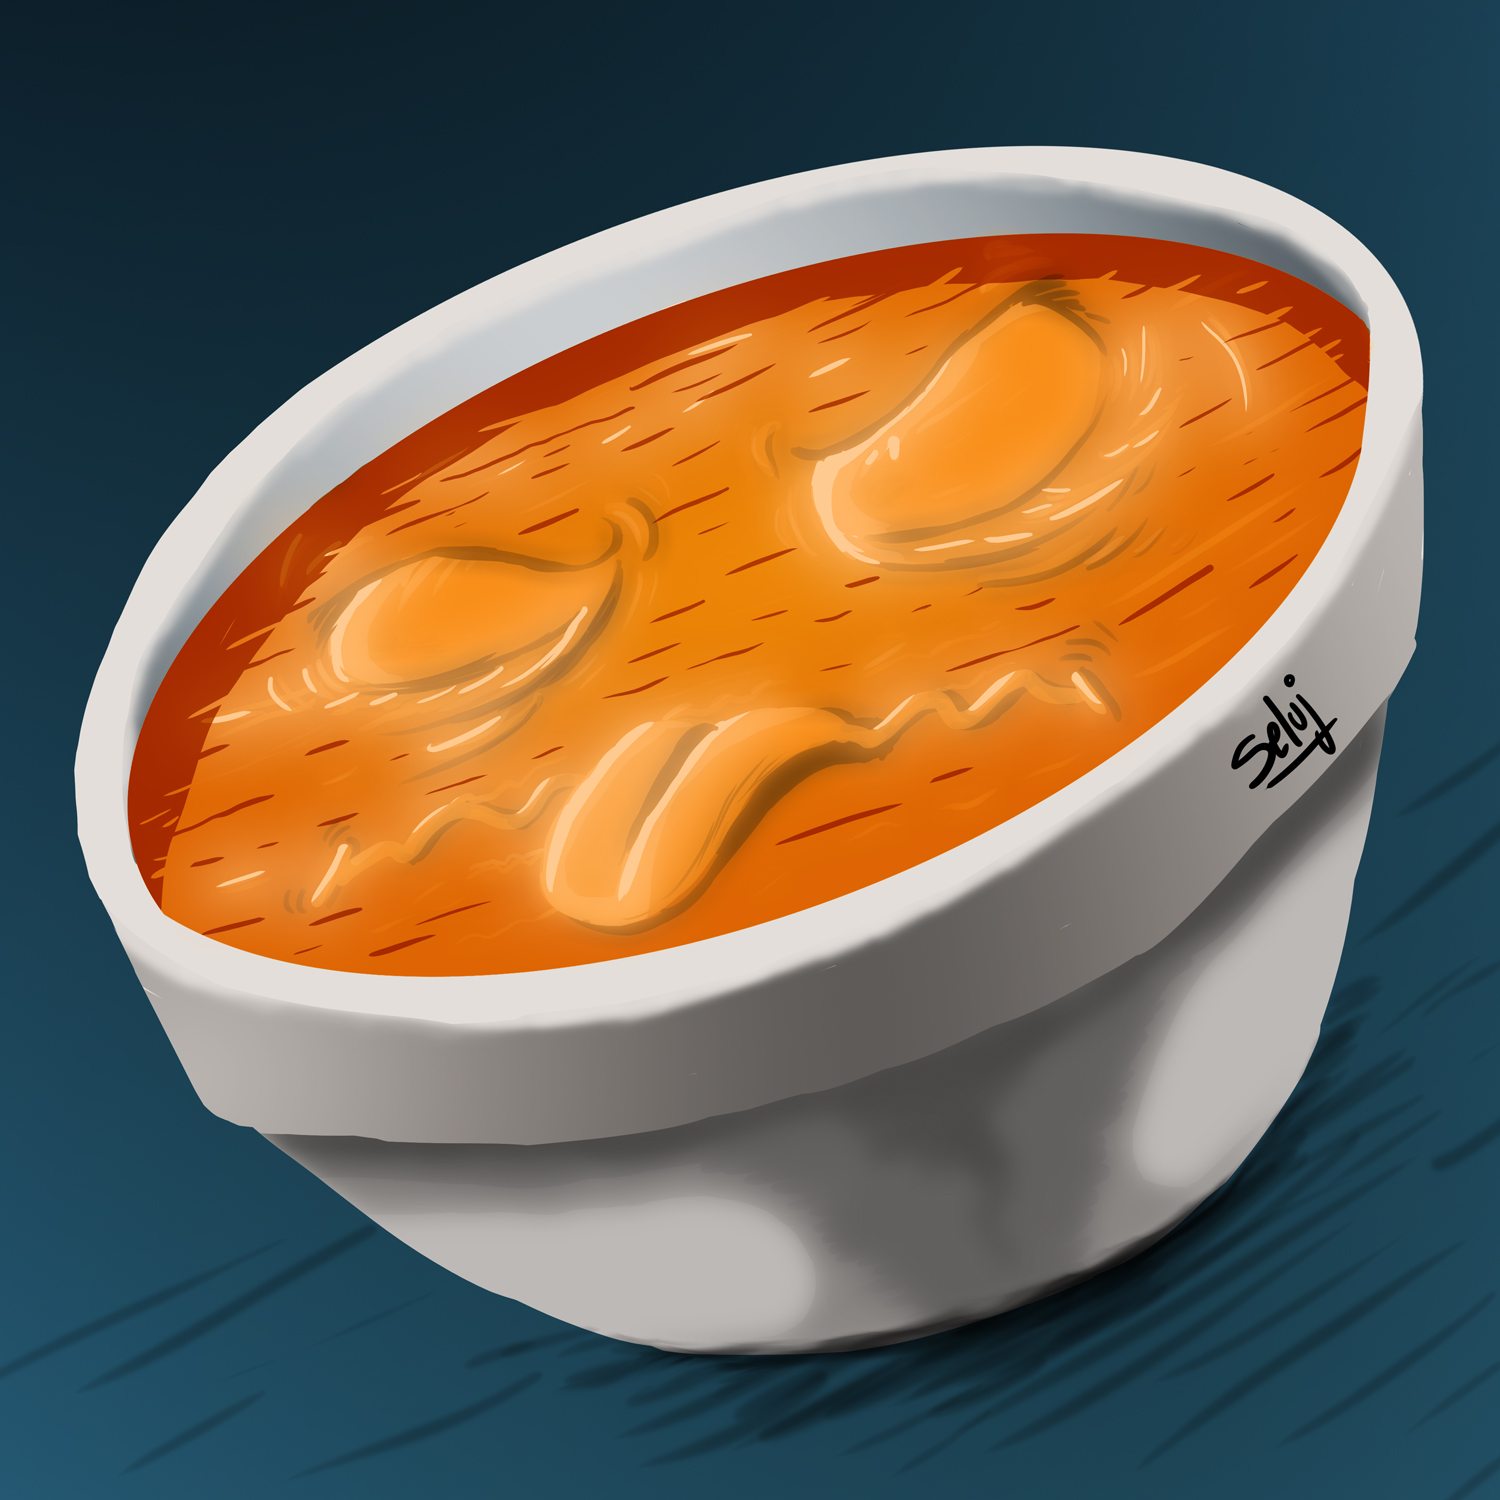 La soupe à la grimace